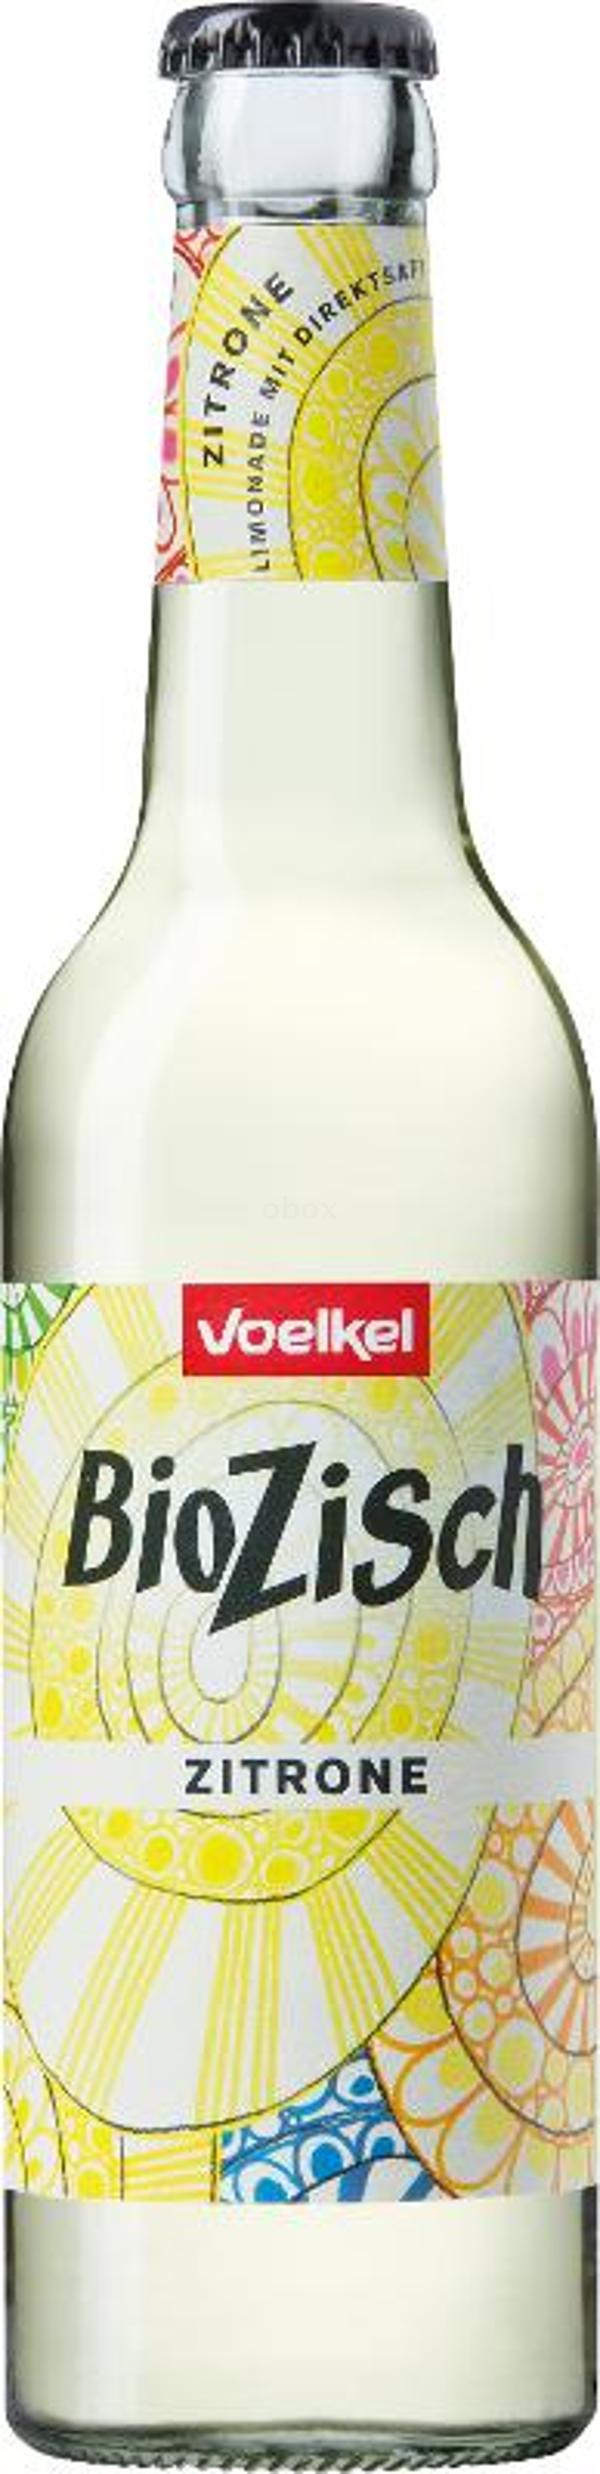 Produktfoto zu BioZisch Zitrone Kiste 12*0,33L